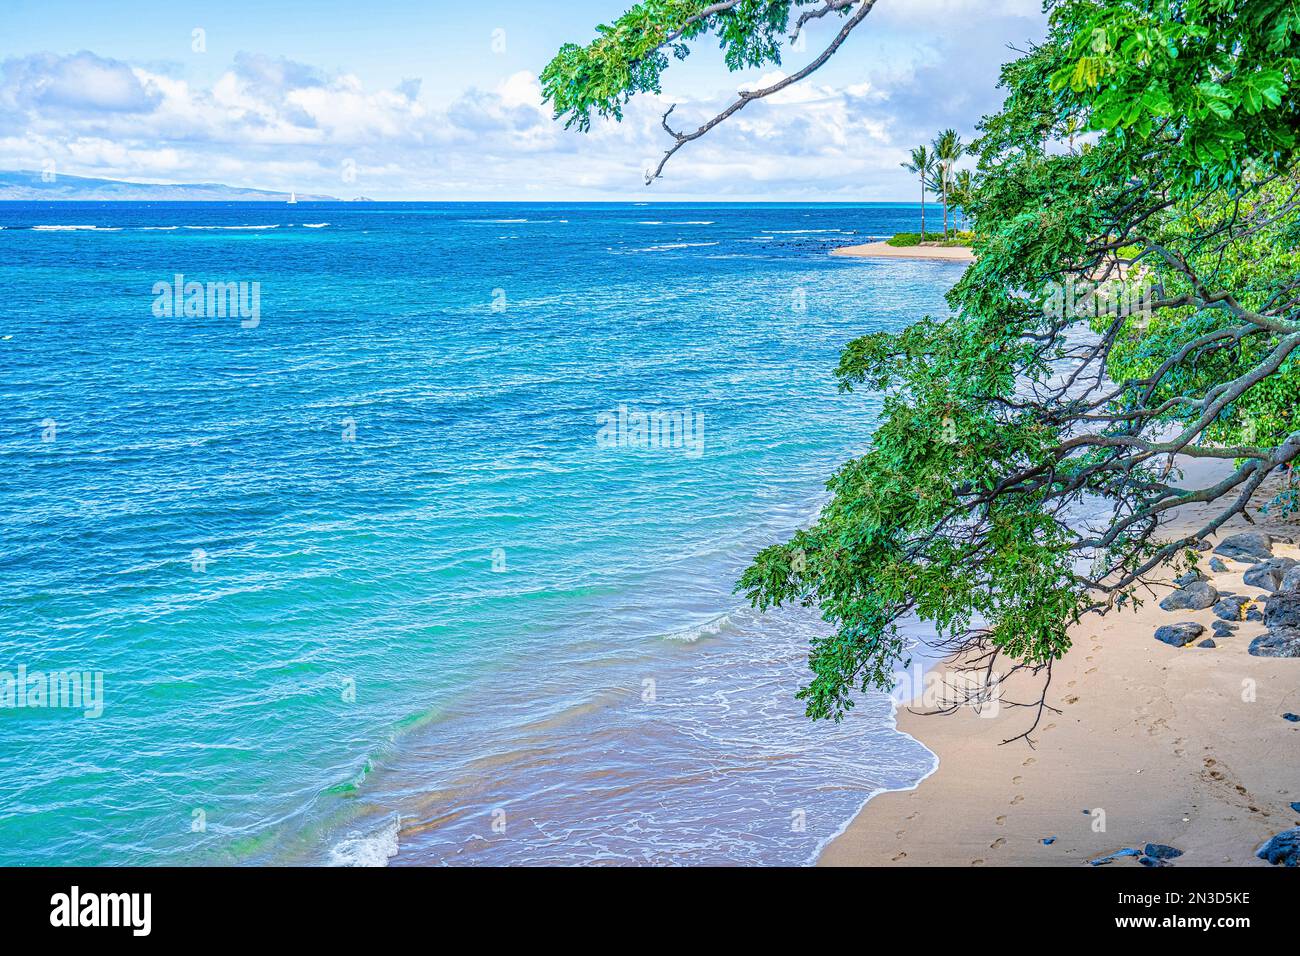 Türkisfarbenes Wasser des Pazifiks, das sanft am Ufer eines abgeschiedenen Strandes in Lahaina, Maui, Hawaii, Vereinigte Staaten von Amerika, schlängelt Stockfoto